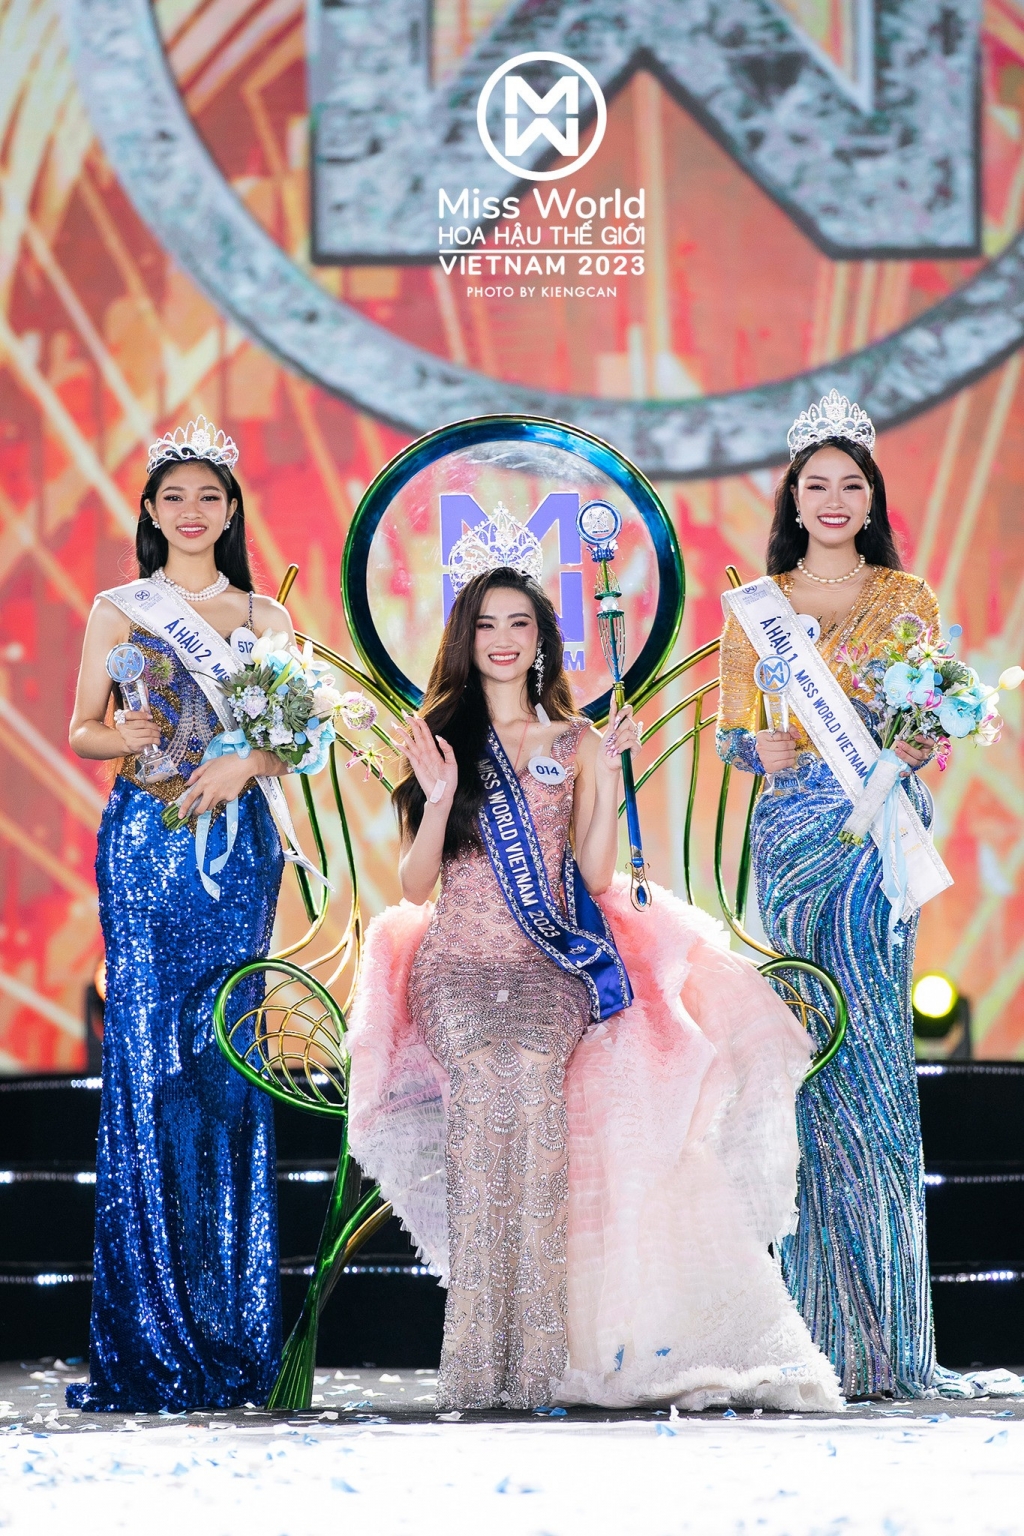 Á hậu 1 Miss World Vietnam Đào Thị Hiền phá 